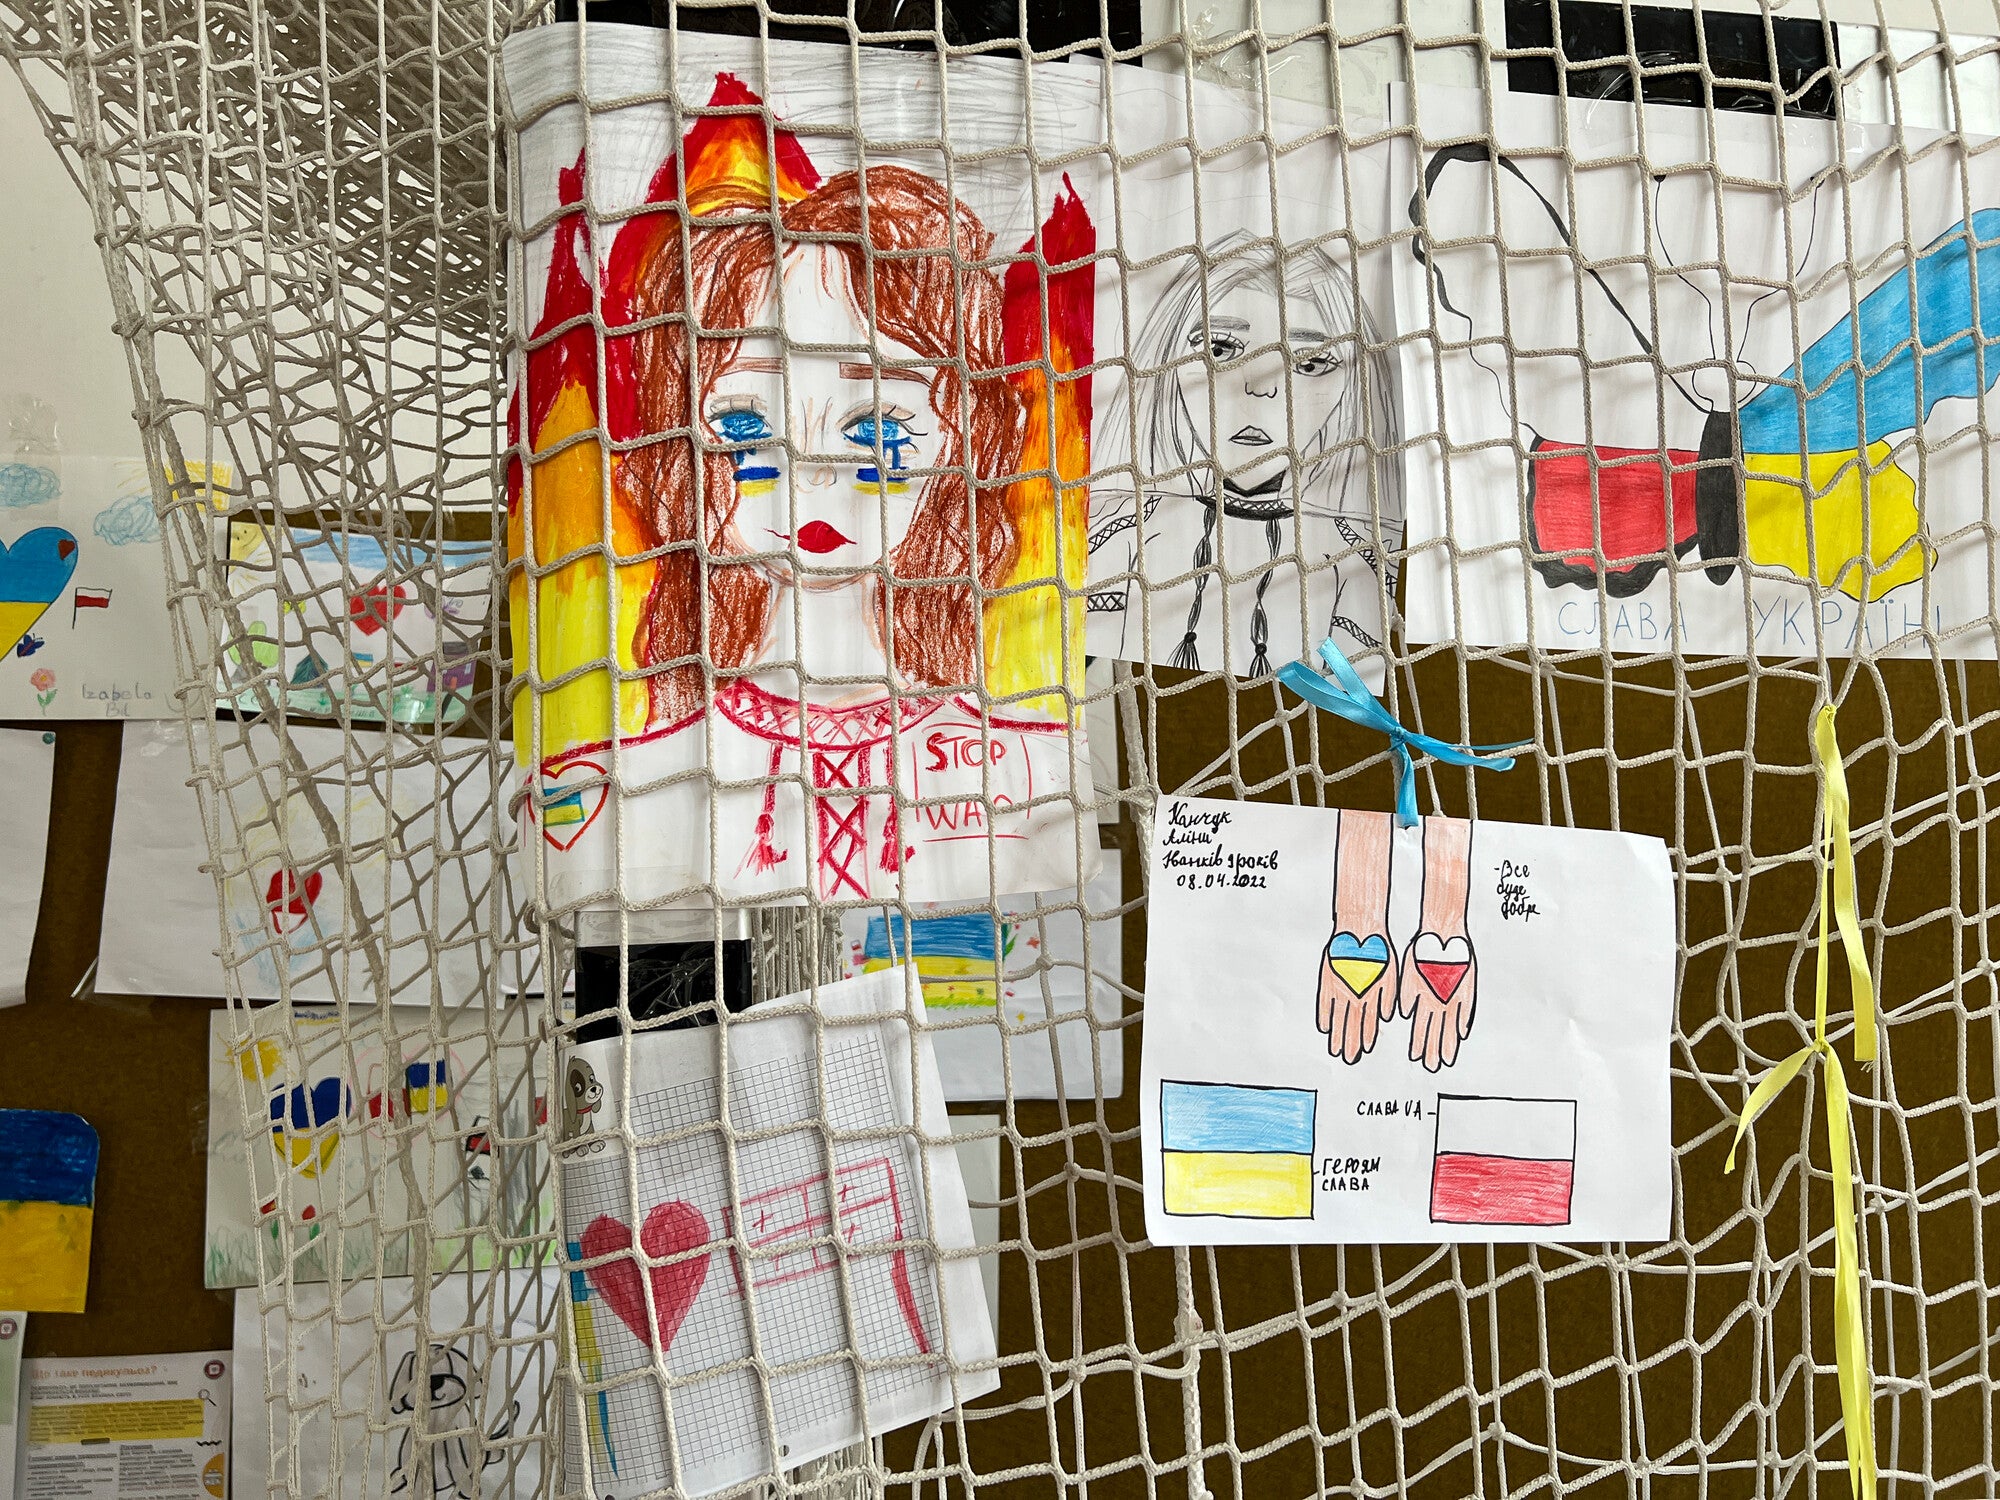 dibujos de niños refugiados ucranianos que se exhibieron informalmente en una estación de artes y oficios en un gimnasio escolar reformado